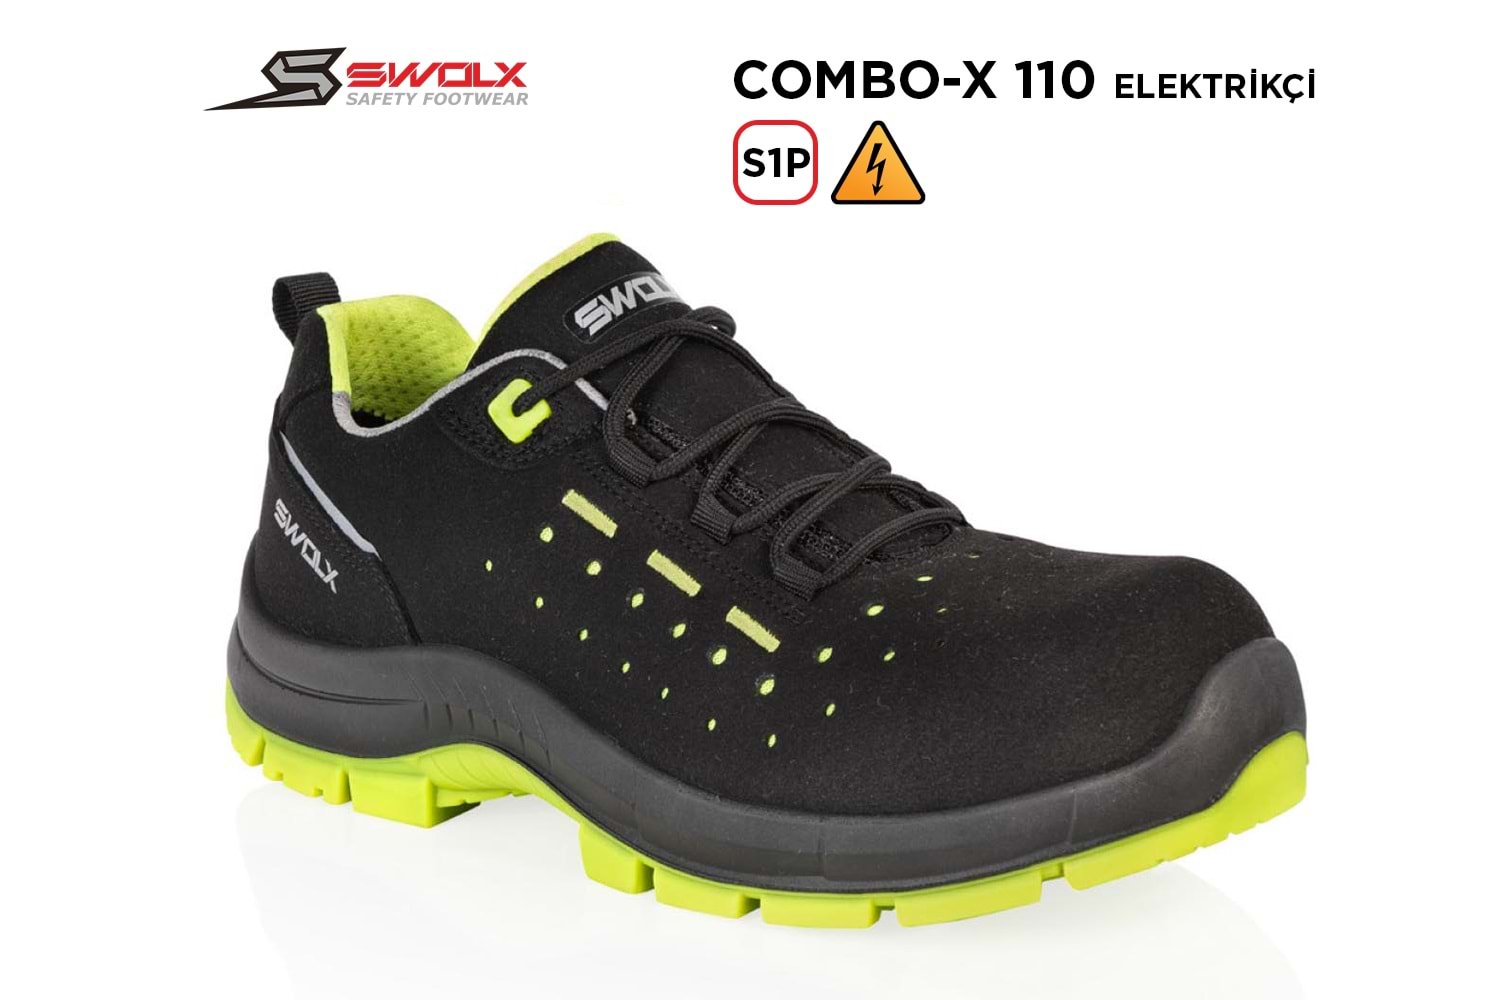 Swolx İş Ayakkabısı - Combo-X 110 S1P Elektrikçi - 40